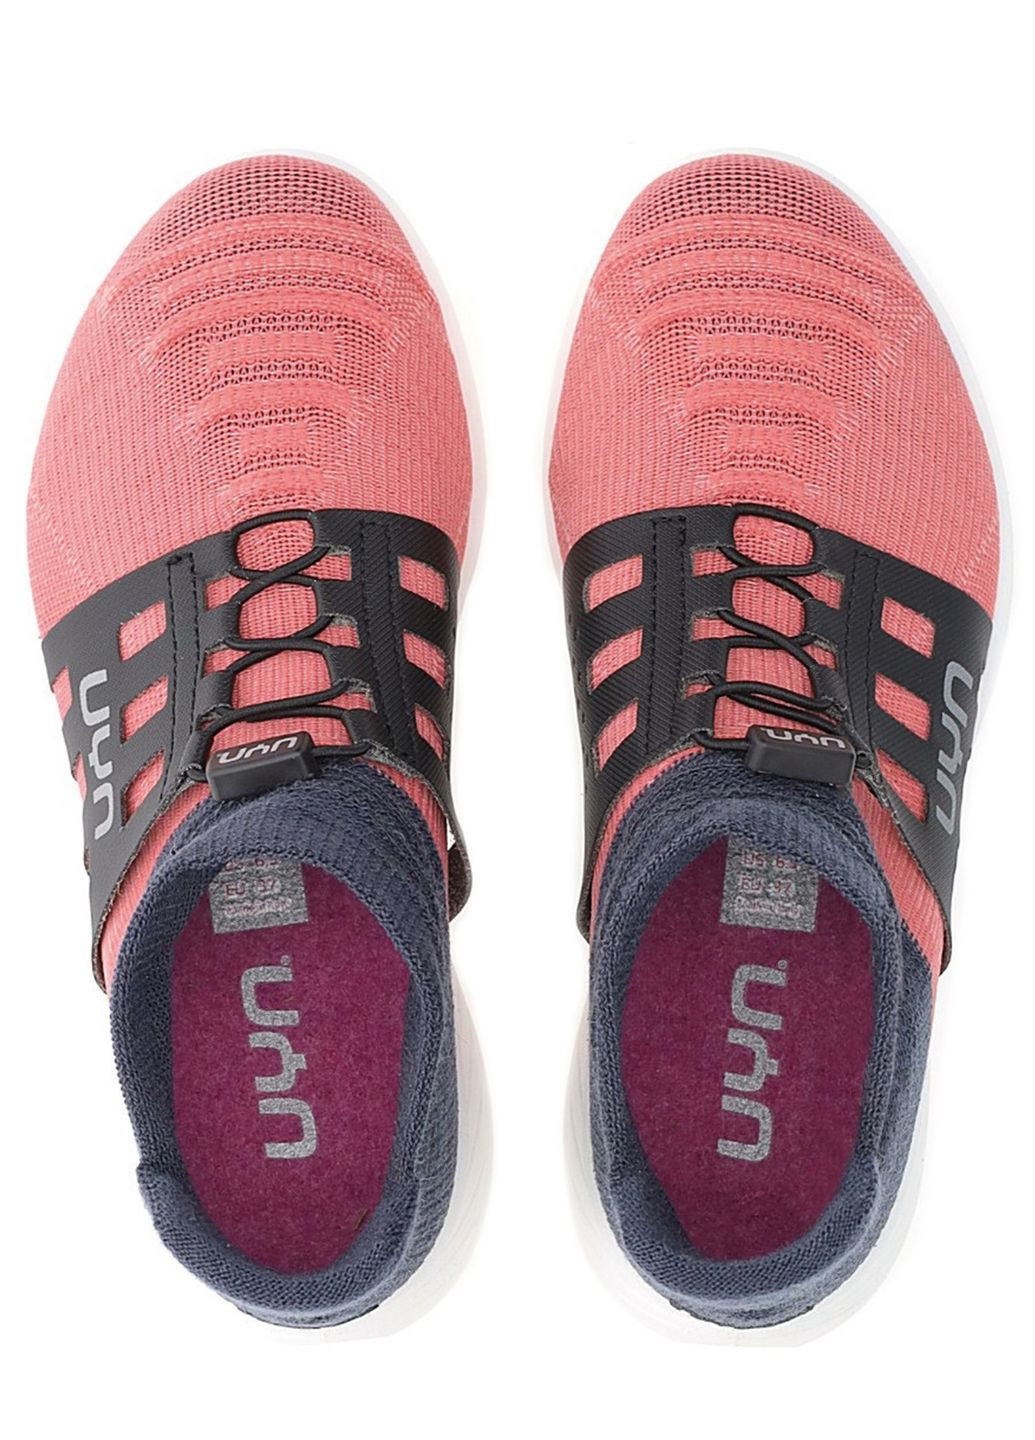 Цветные кроссовки женские UYN X-Cross Tune P402 Pink/Carbon